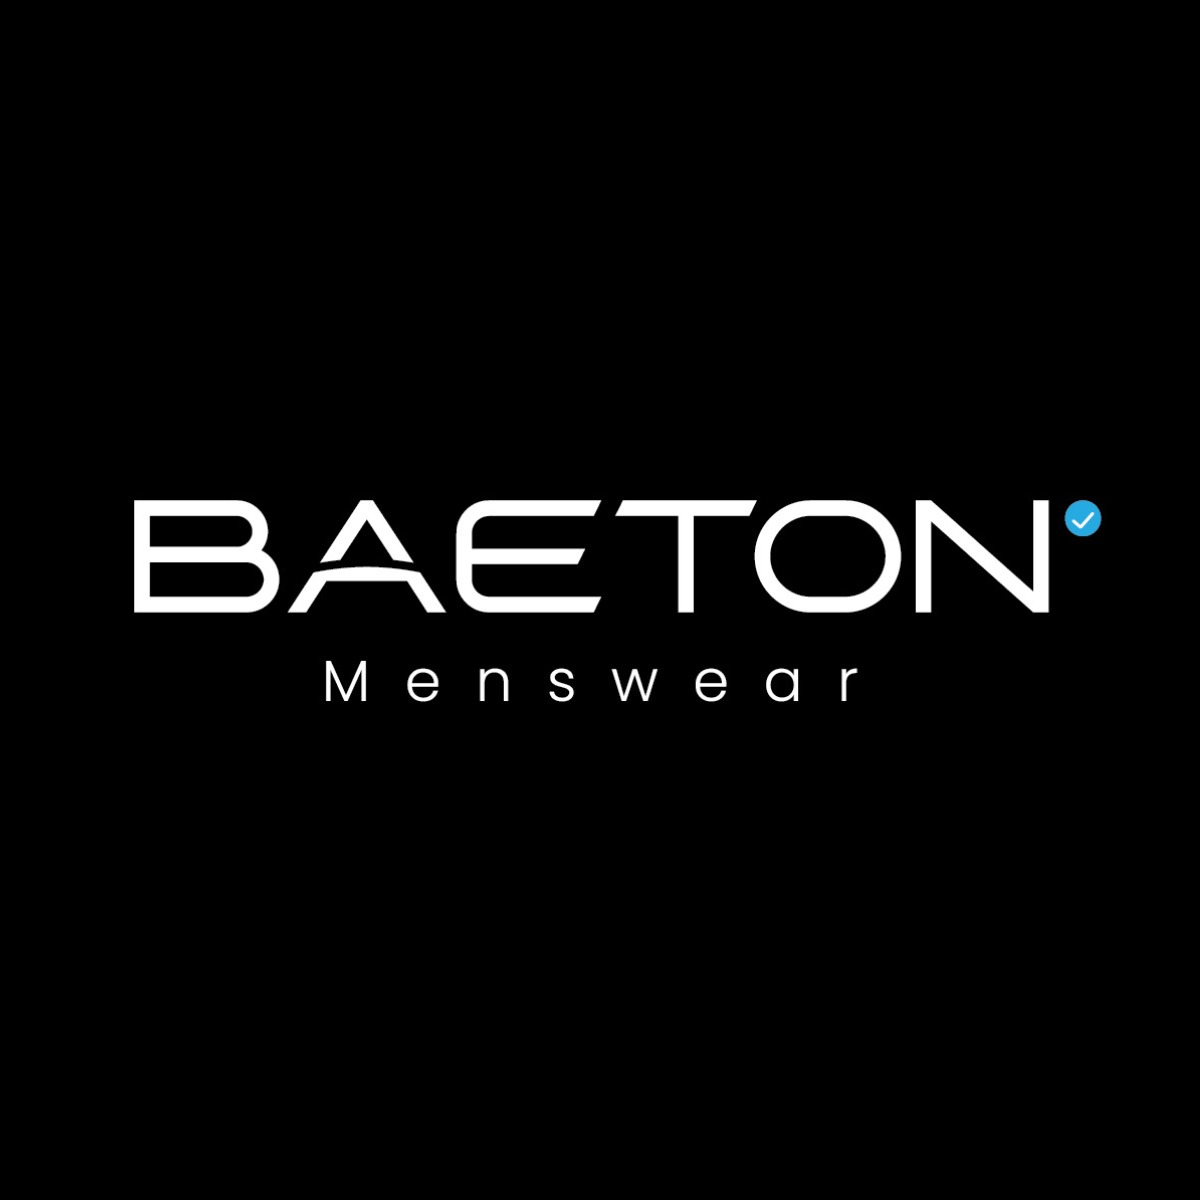 BAETON Menswear